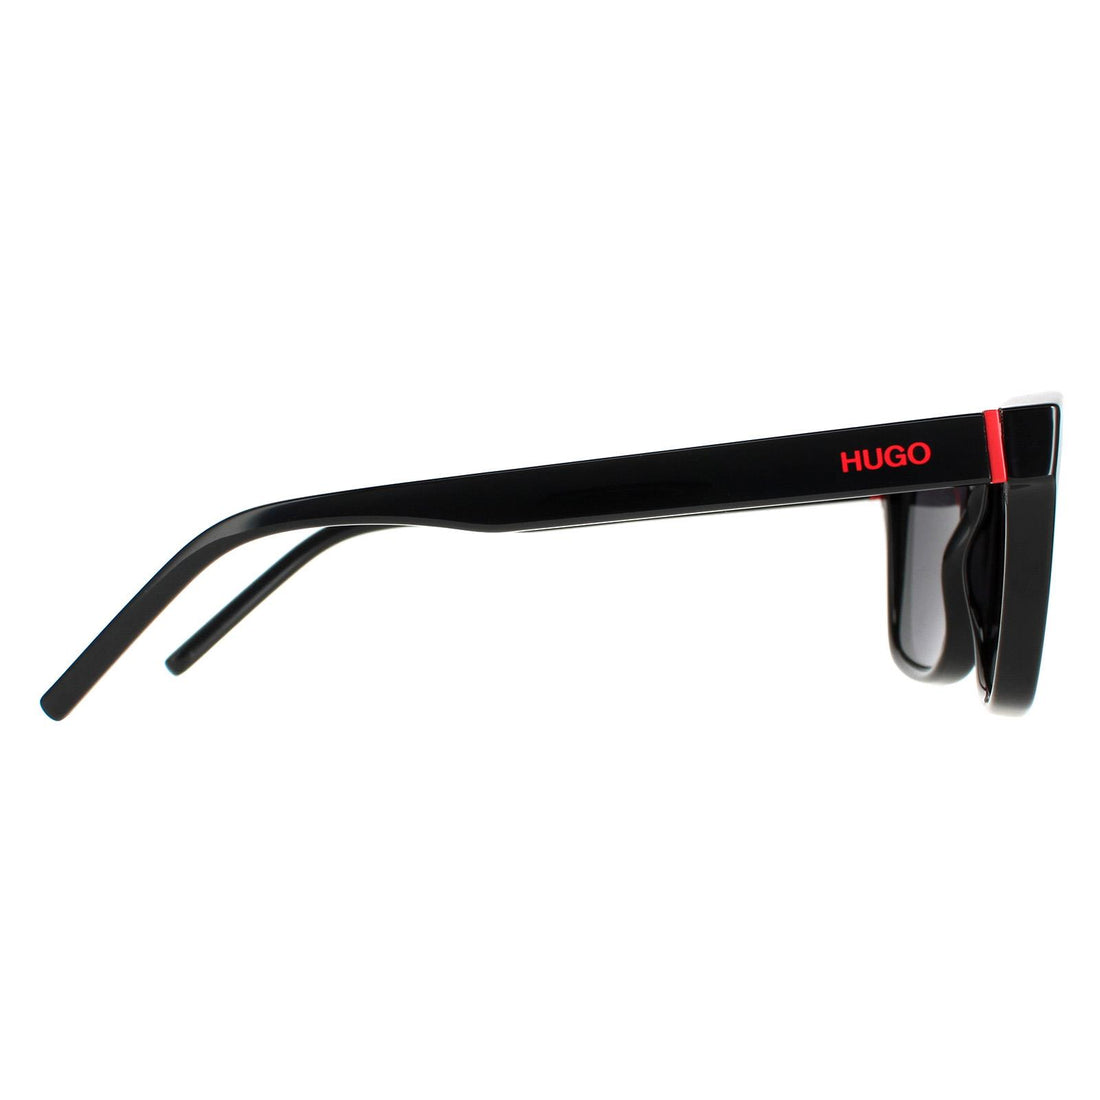 Hugo by Hugo Boss Sunglasses HG 1162/S 807 IR Black Grey Blue